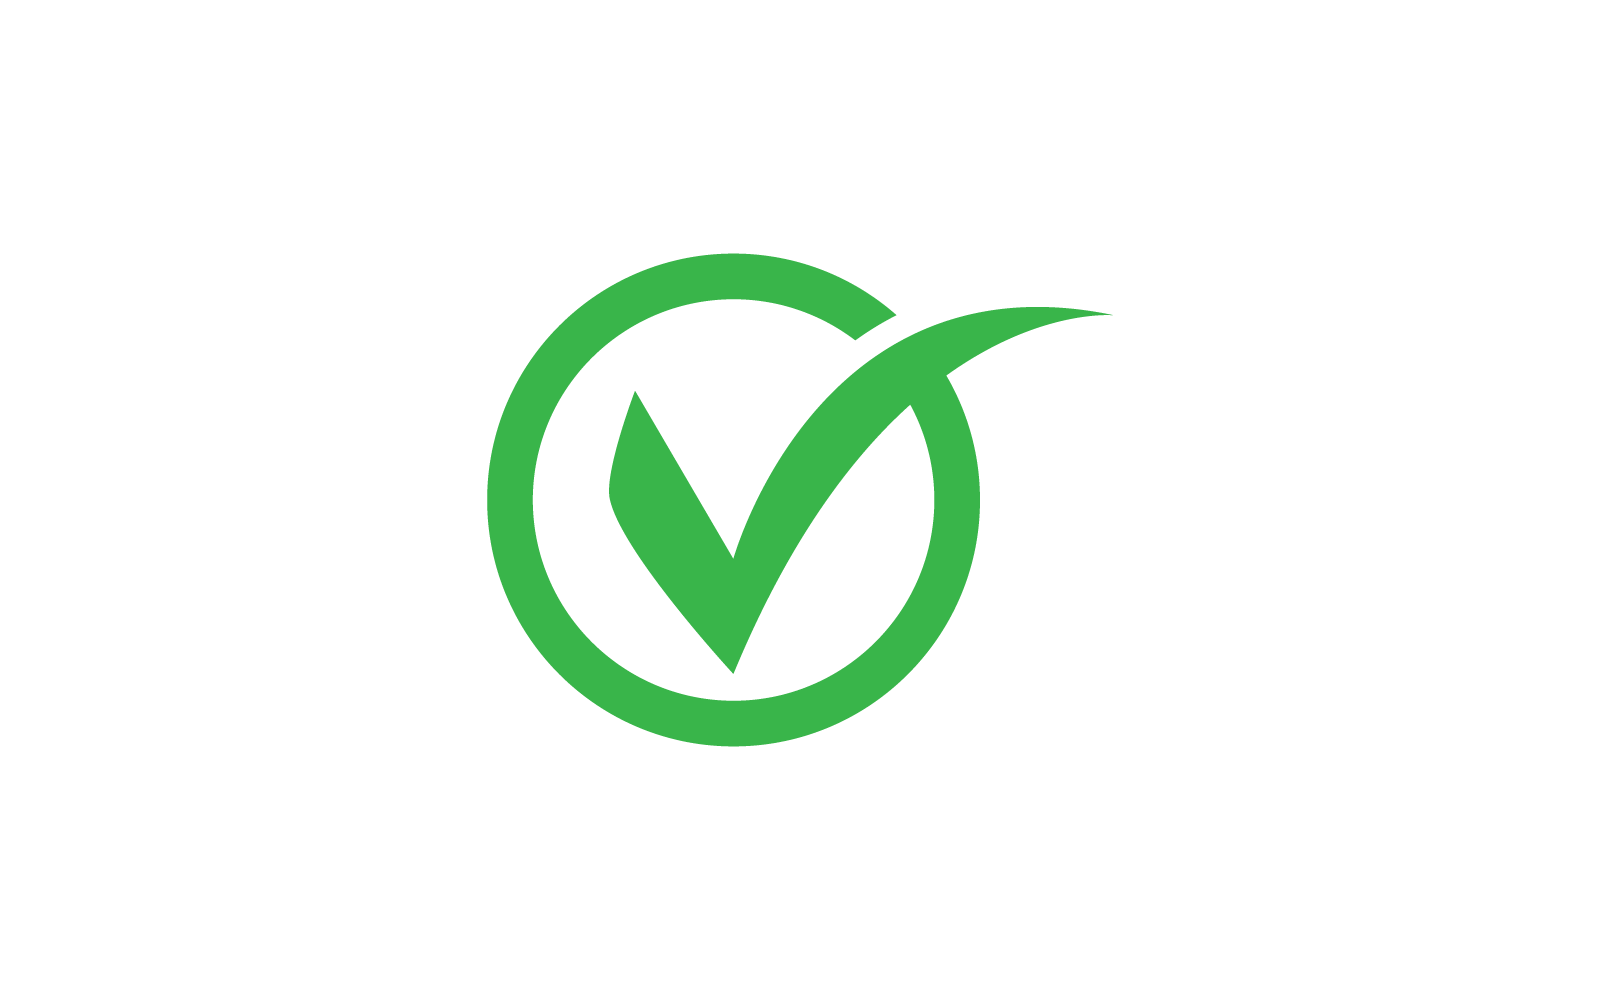 Check mark V letter logo design